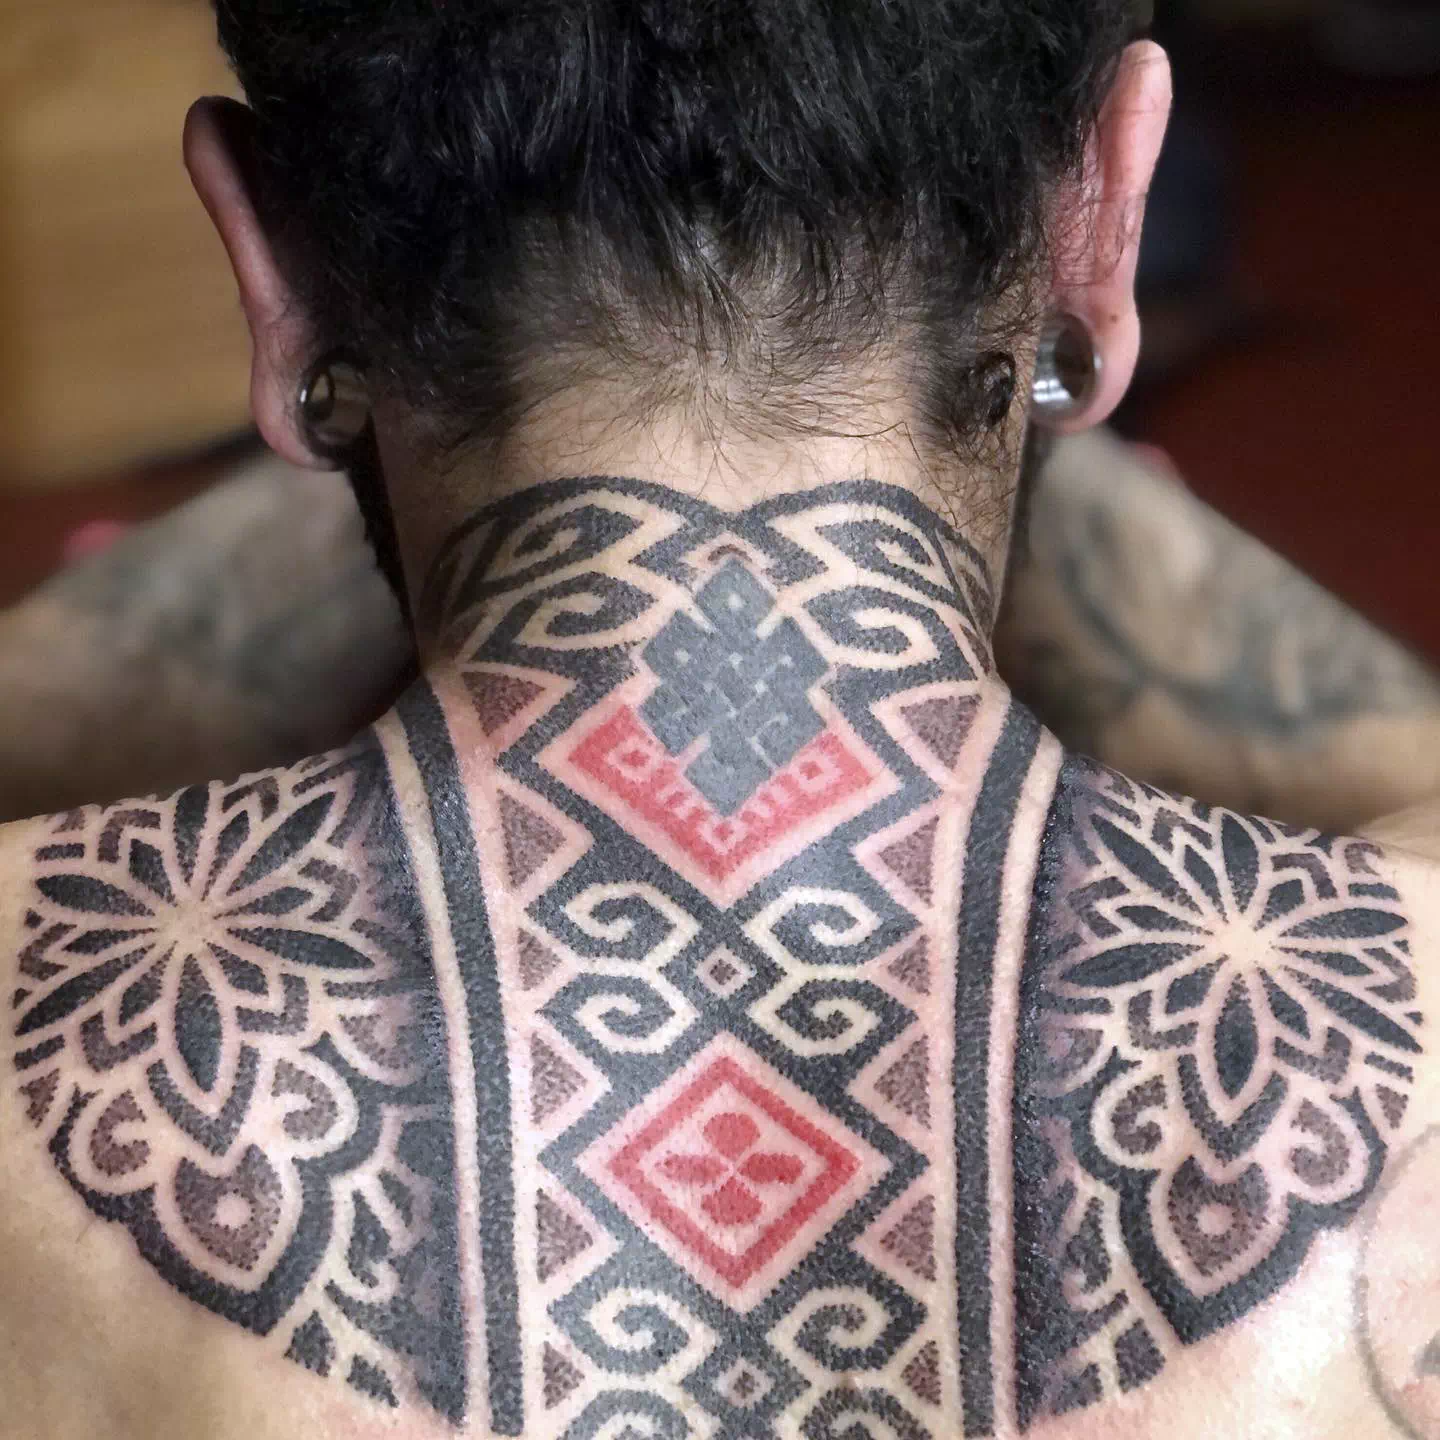 Tatuaje en la espalda 6